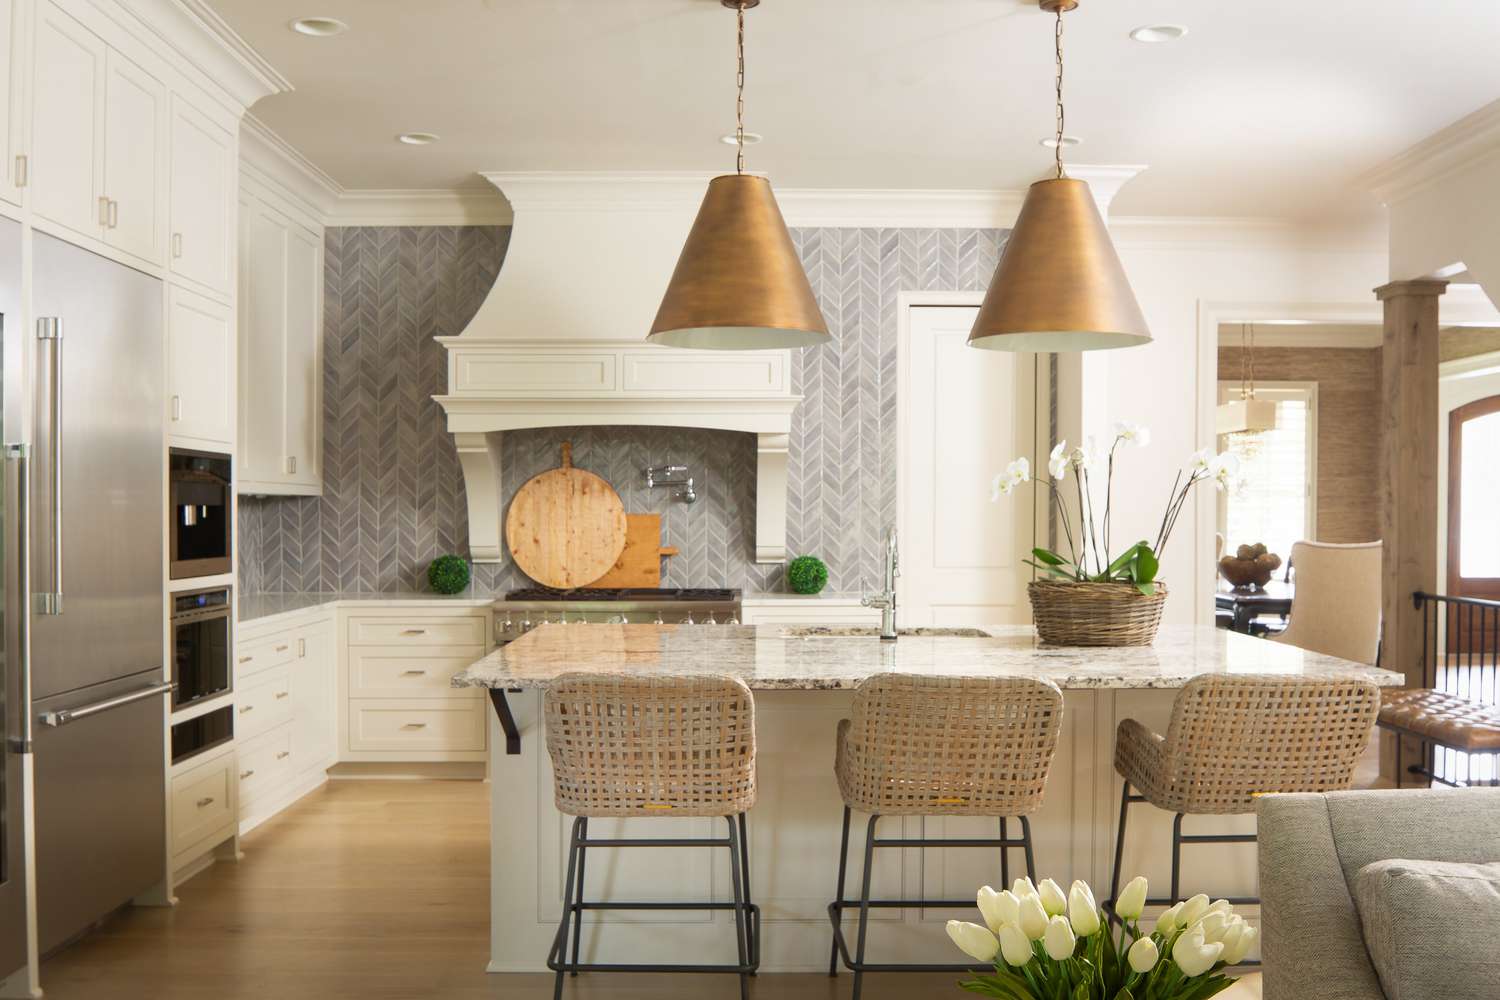 Uma cozinha de transição com azulejos de mármore em espinha de peixe e detalhes em ouro e prata